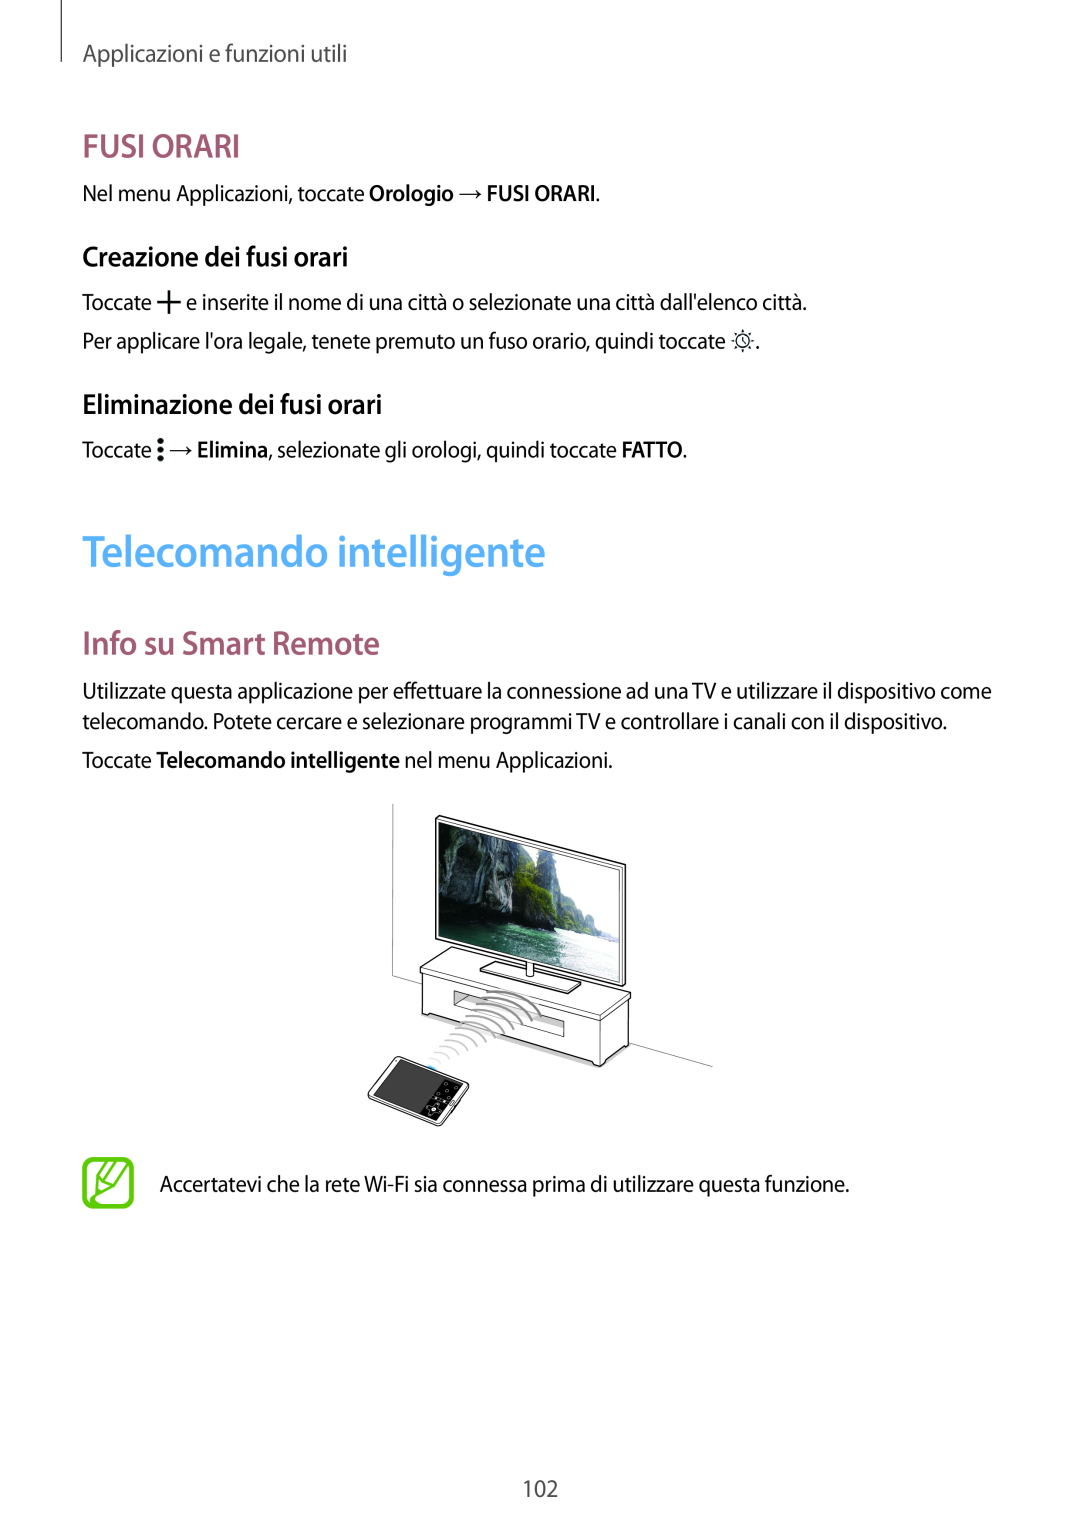 Samsung SM-T700NTSAXEO manual Telecomando intelligente, Fusi Orari, Info su Smart Remote, Creazione dei fusi orari 